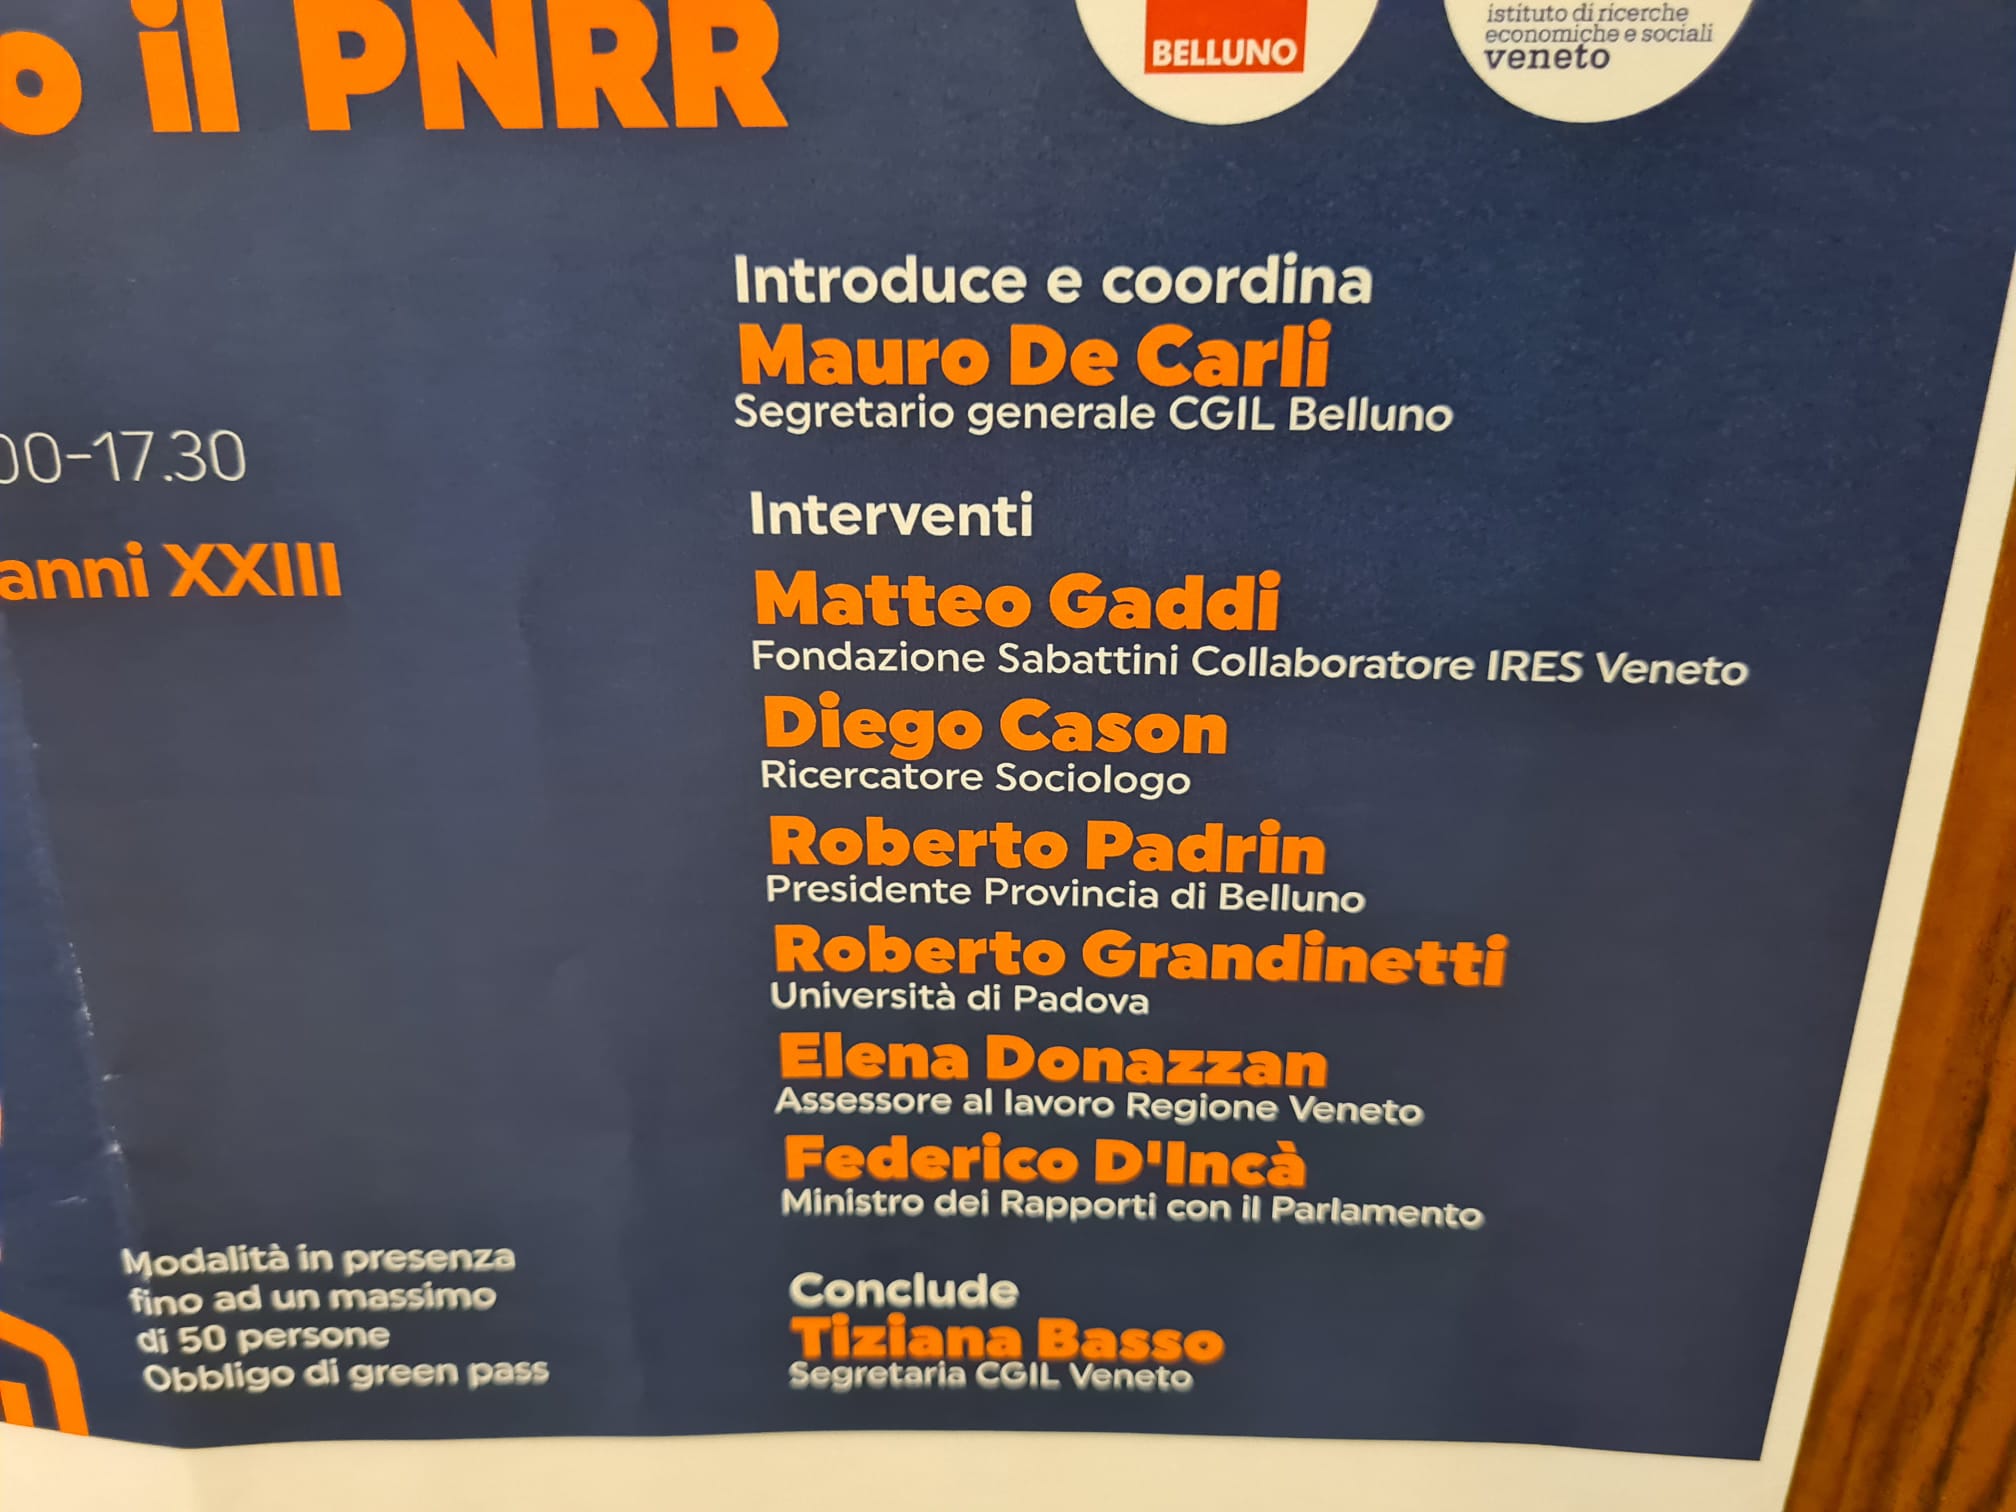 La visione per il bellunese secondo il PNRR